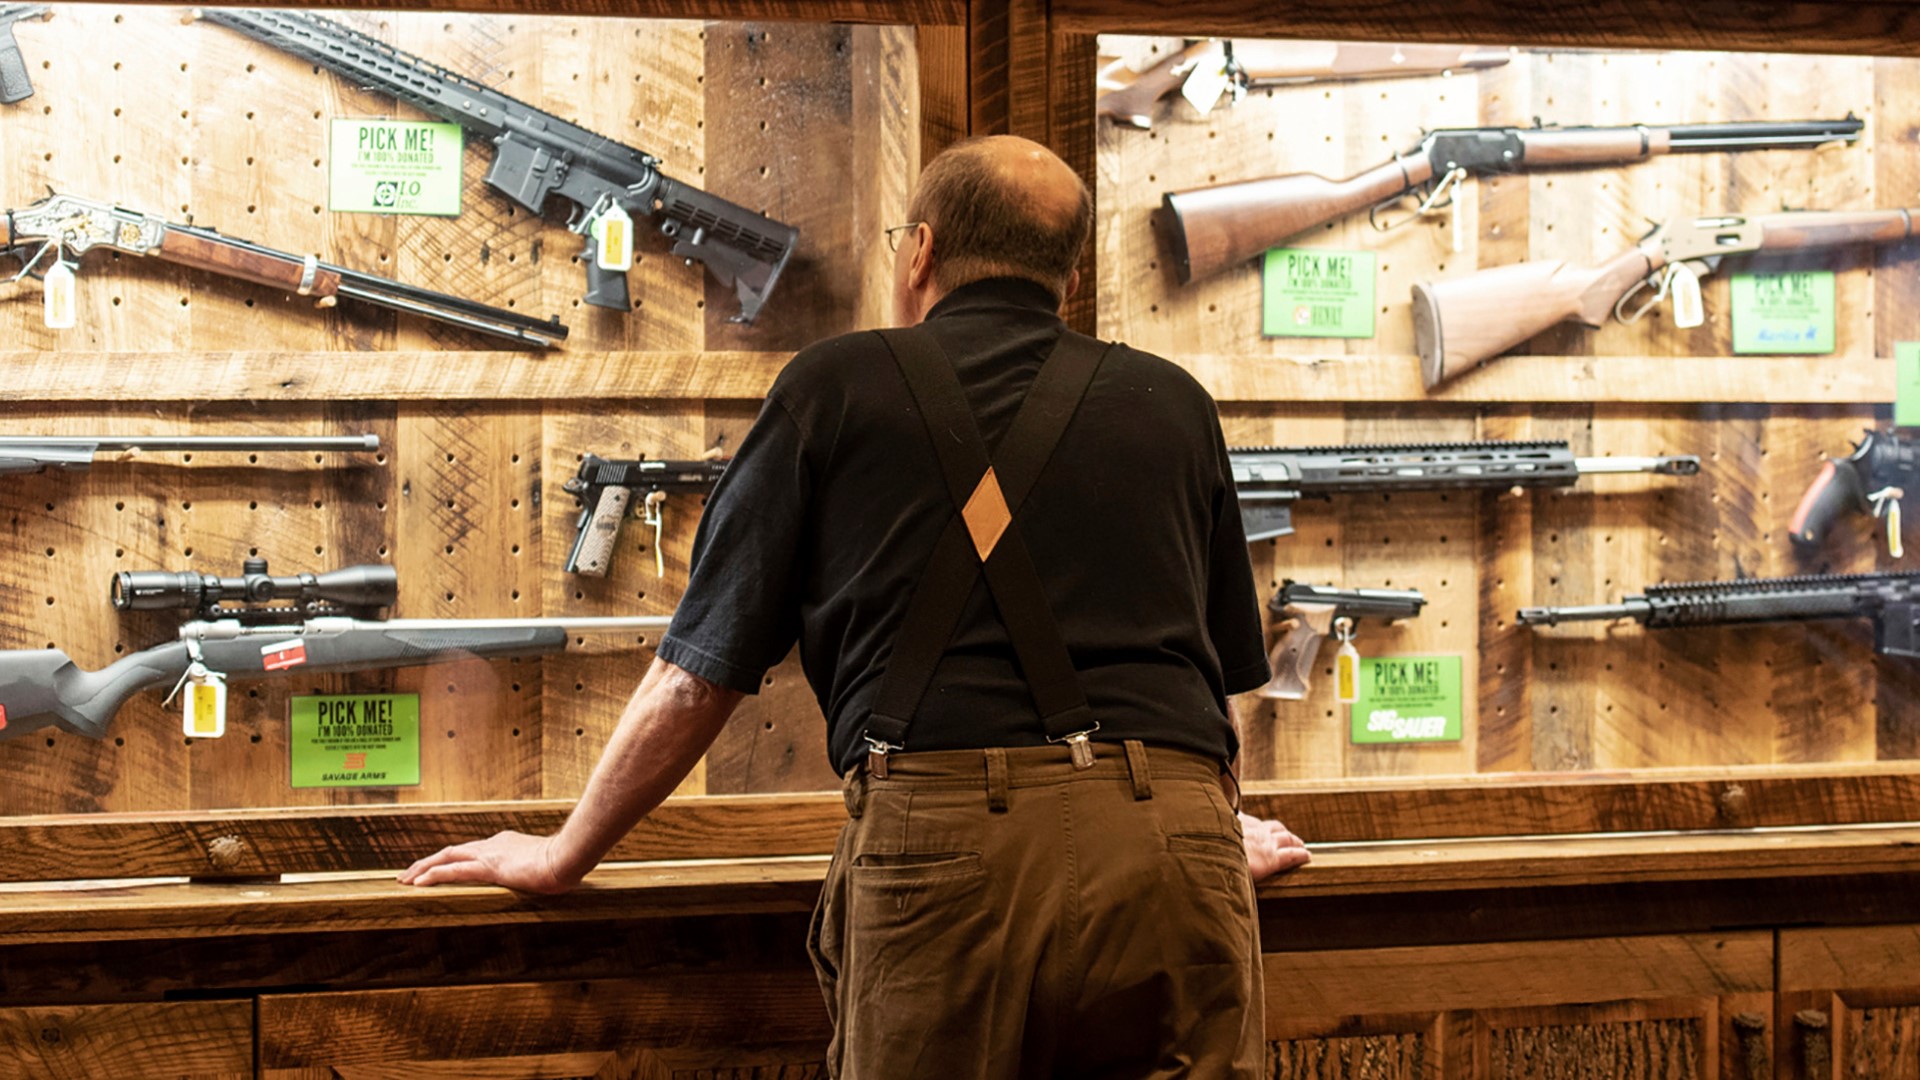 Central Texas gun enthusiasts concerned as Biden takes reigns